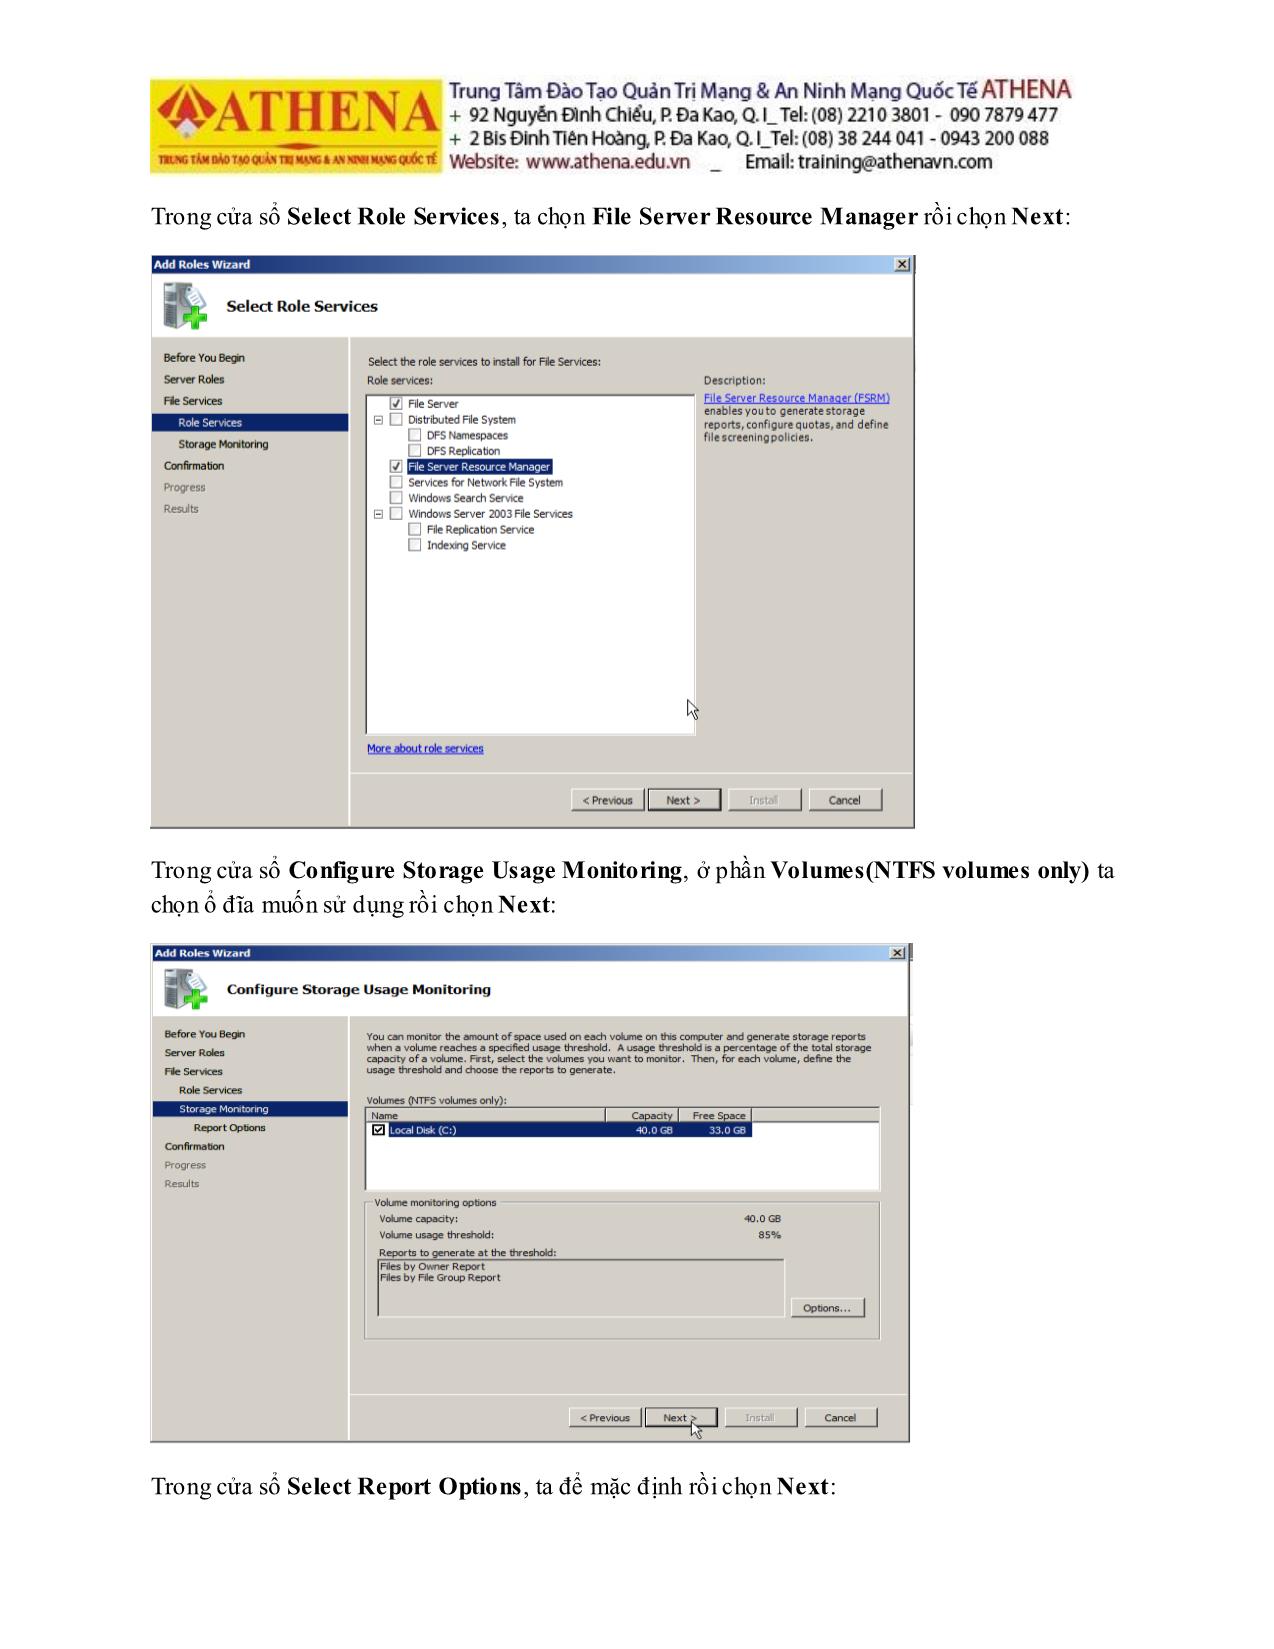 Tài liệu Hướng dẫn thực hành quản trị mạng - File server resource manager trang 4